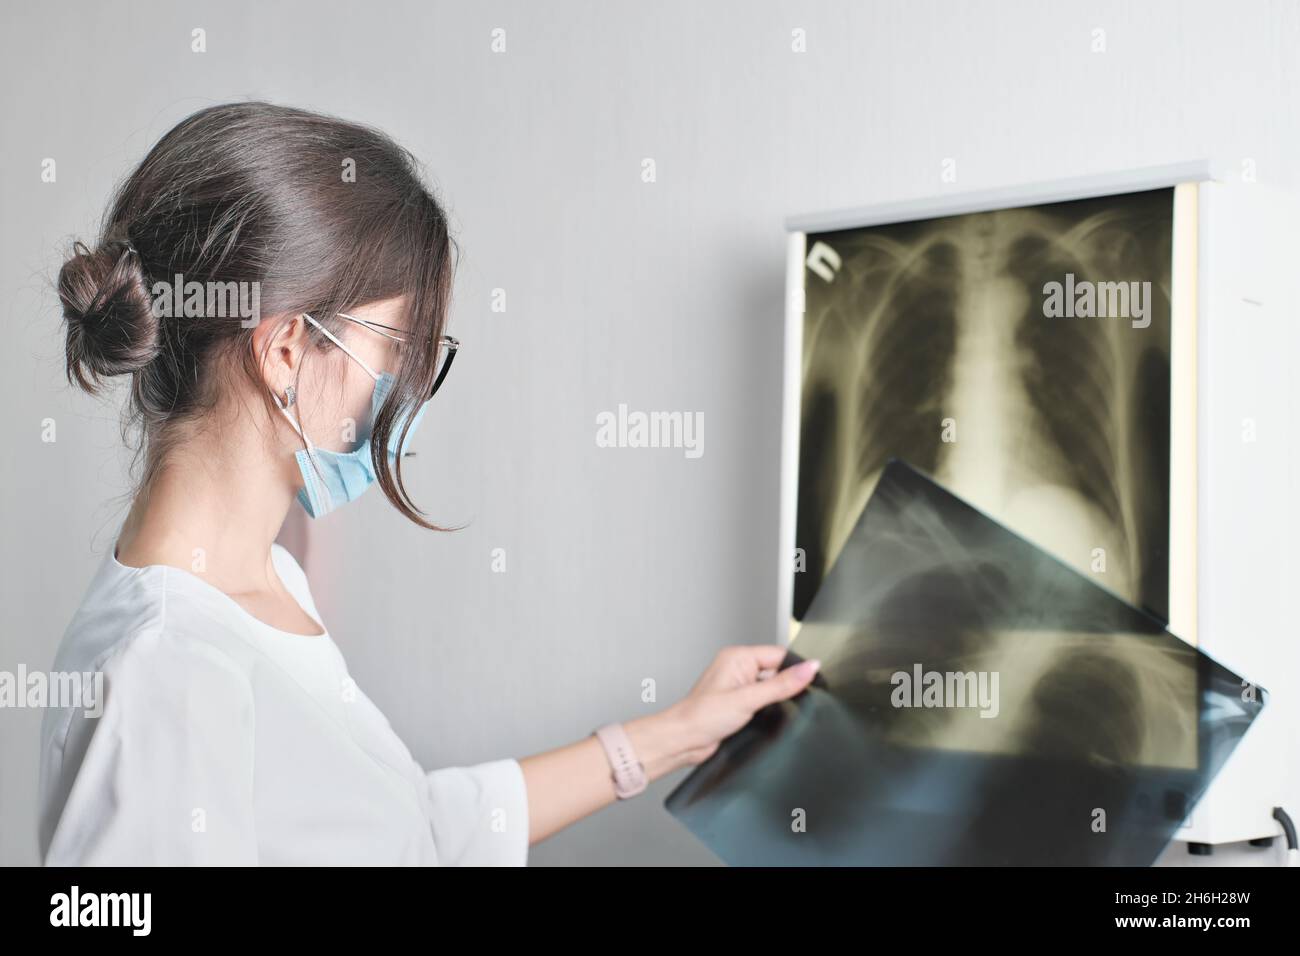 mixe race donna medico radiologo controllo film x-ray immagine dalla macchina. Analizzare un progresso della malattia. Concetto di assistenza sanitaria, diagnostica moderna met Foto Stock